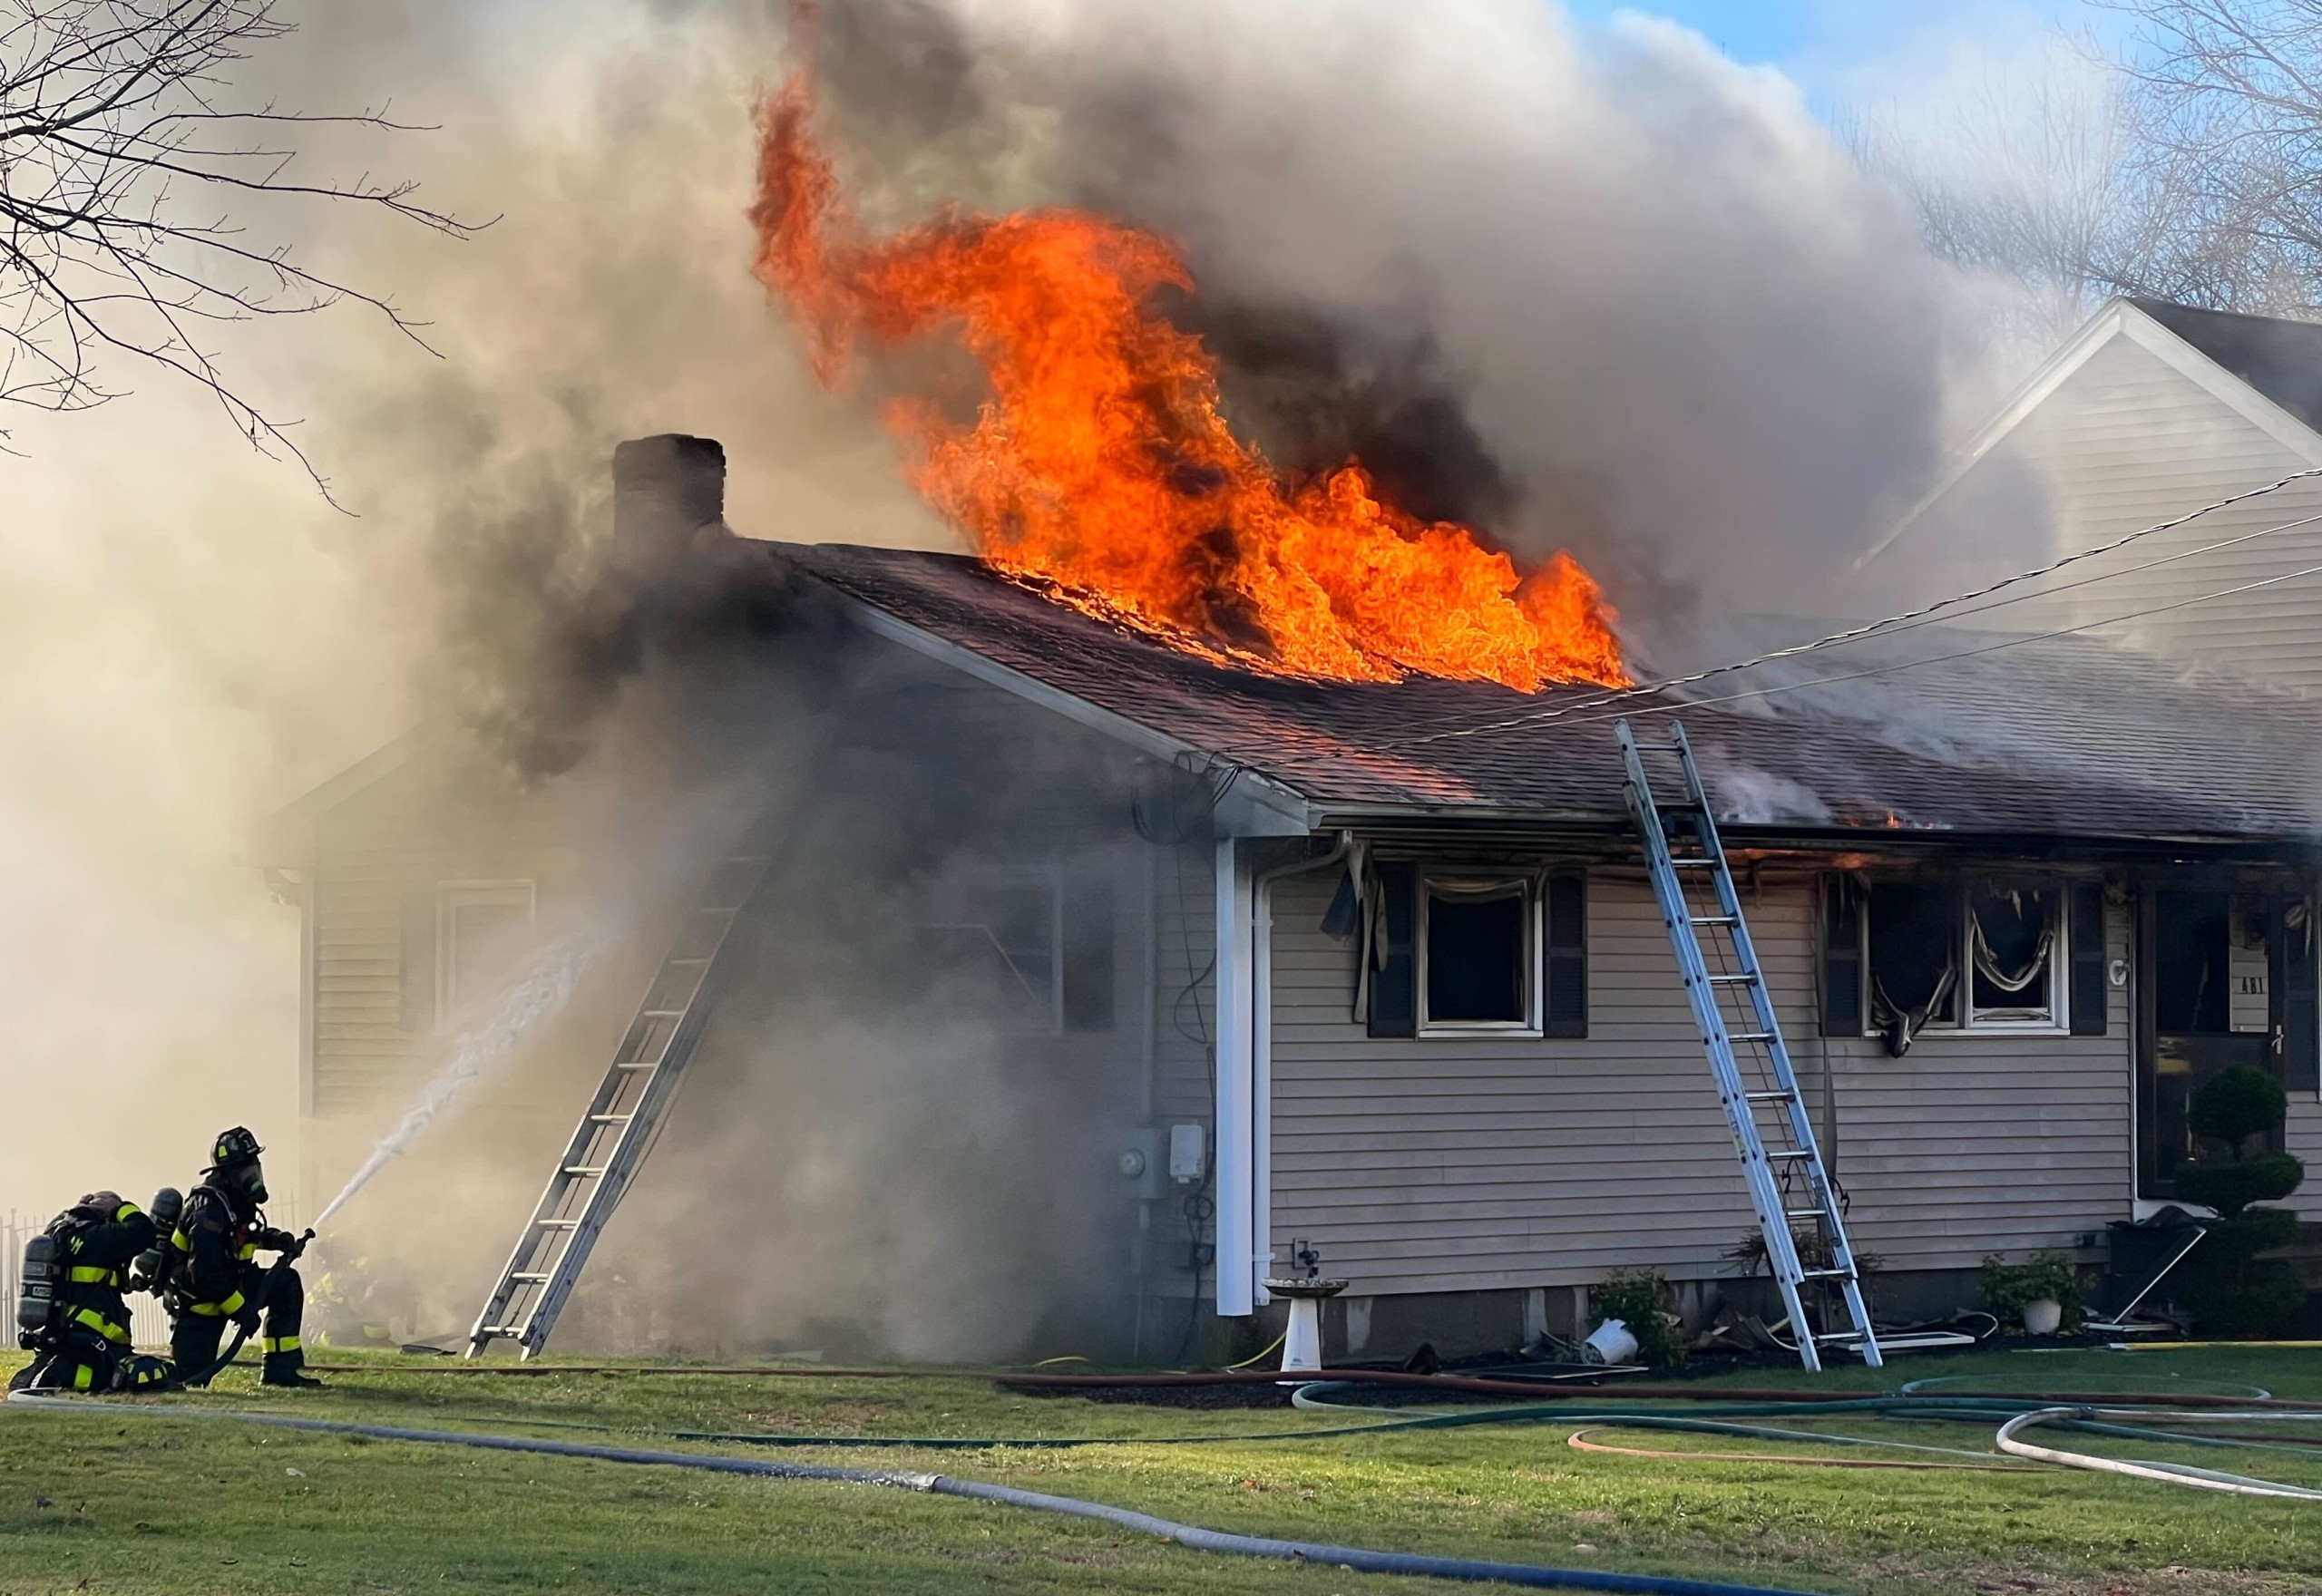 Fire rips through Raynham home